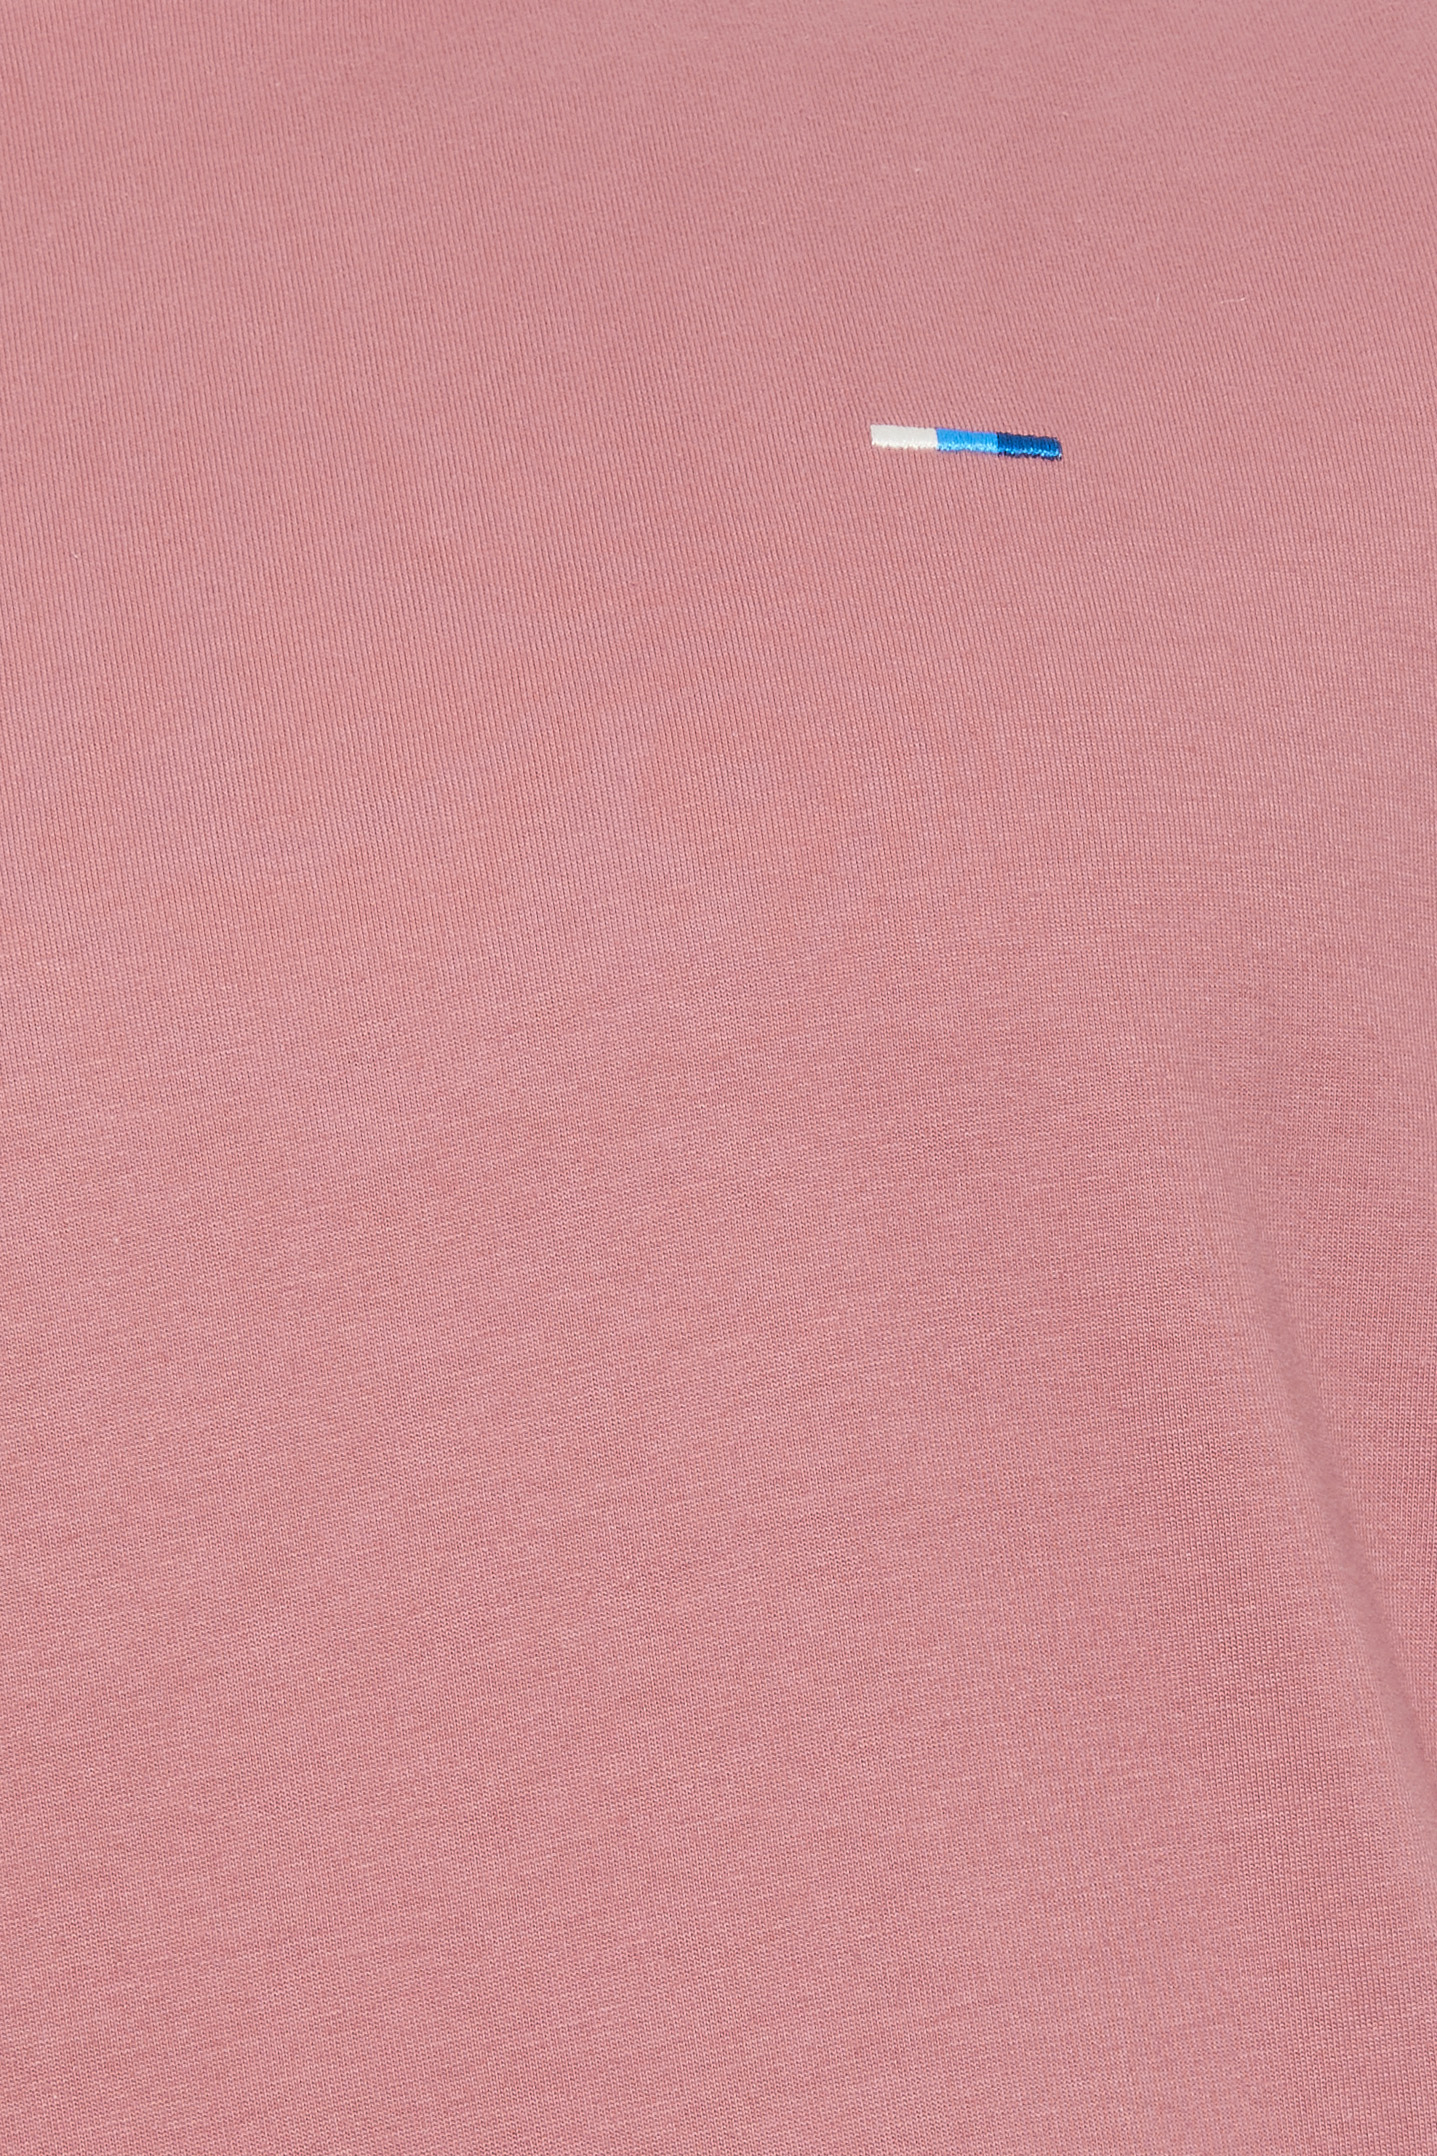 BadRhino Big & Tall Rose Pink Core T-Shirt | BadRhino 3